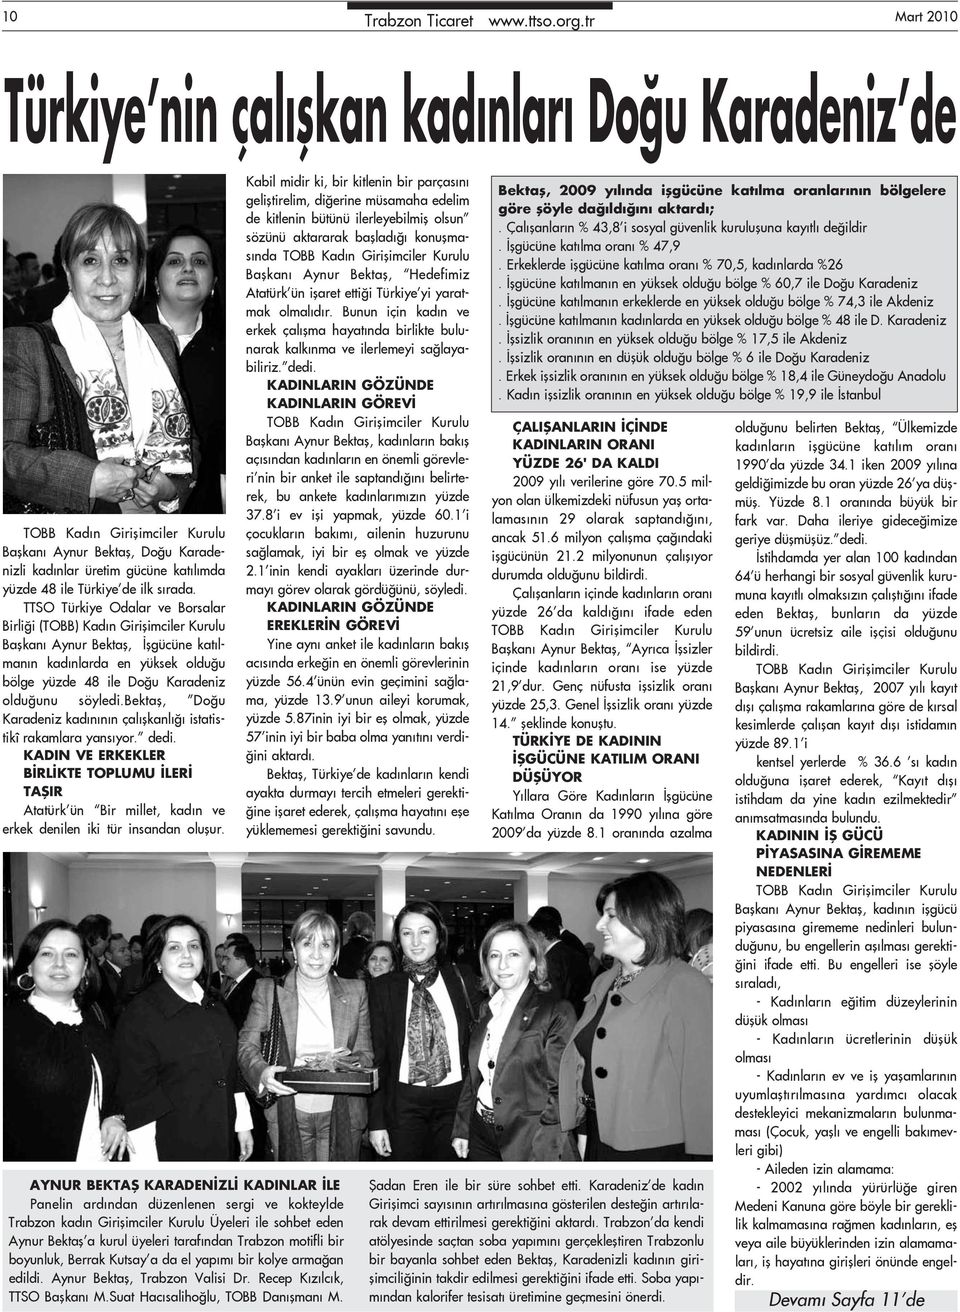 TTSO Türkiye Odalar ve Borsalar Birliği (TOBB) Kadın Girişimciler Kurulu Başkanı Aynur Bektaş, İşgücüne katılmanın kadınlarda en yüksek olduğu bölge yüzde 48 ile Doğu Karadeniz olduğunu söyledi.